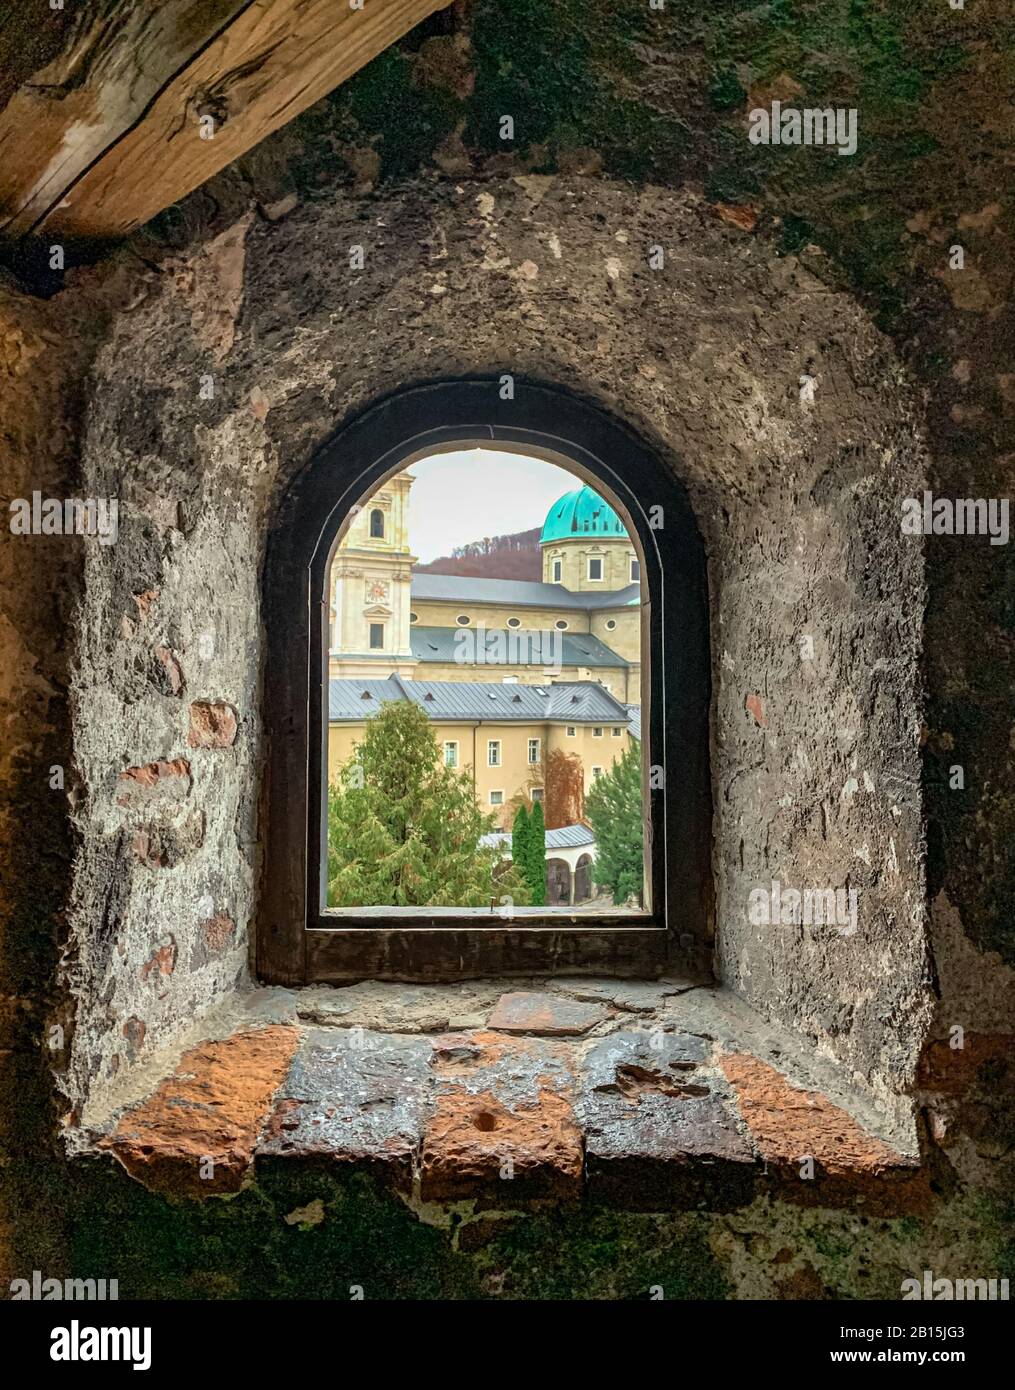 Salzburger Dom und Petersfriedhof, das geistige Herz Salzburgs, Österreichs, Europas. Durch ein Fenster der Katakomben gesehen. Stockfoto